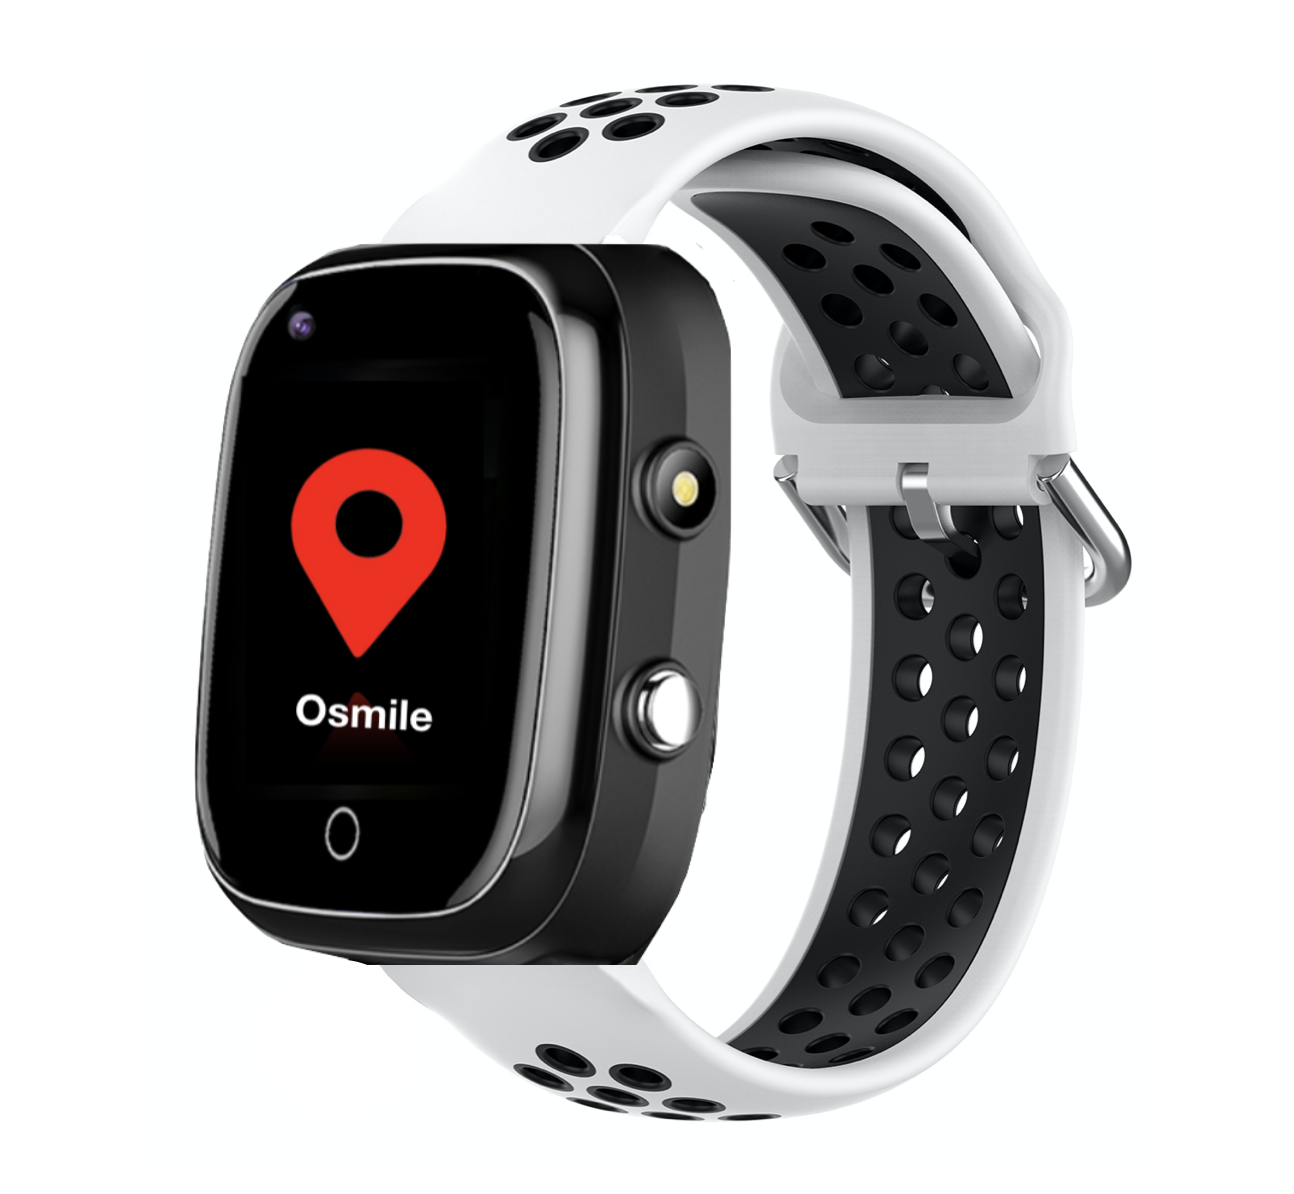 Osmile GPS1000 (L) 獨居老人跌倒偵測警示與失智老人防走失緊急求救手錶 / AGPS個人衛星定位手錶/ 老人手錶/ 老人防水手錶/ 輔具手錶 (沖澡淋浴防水手錶)